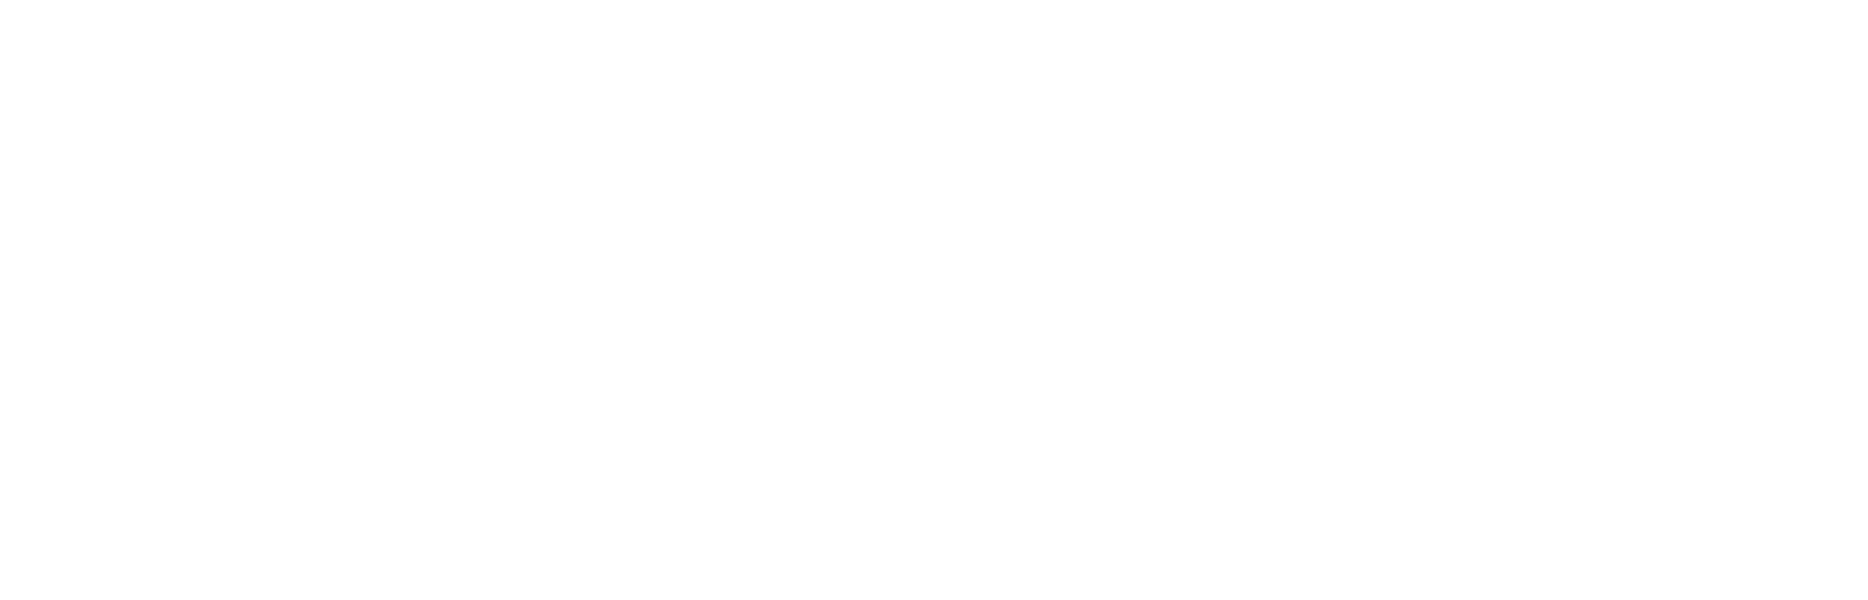 logo MXTAD - Taller de Arquitectura y Diseño